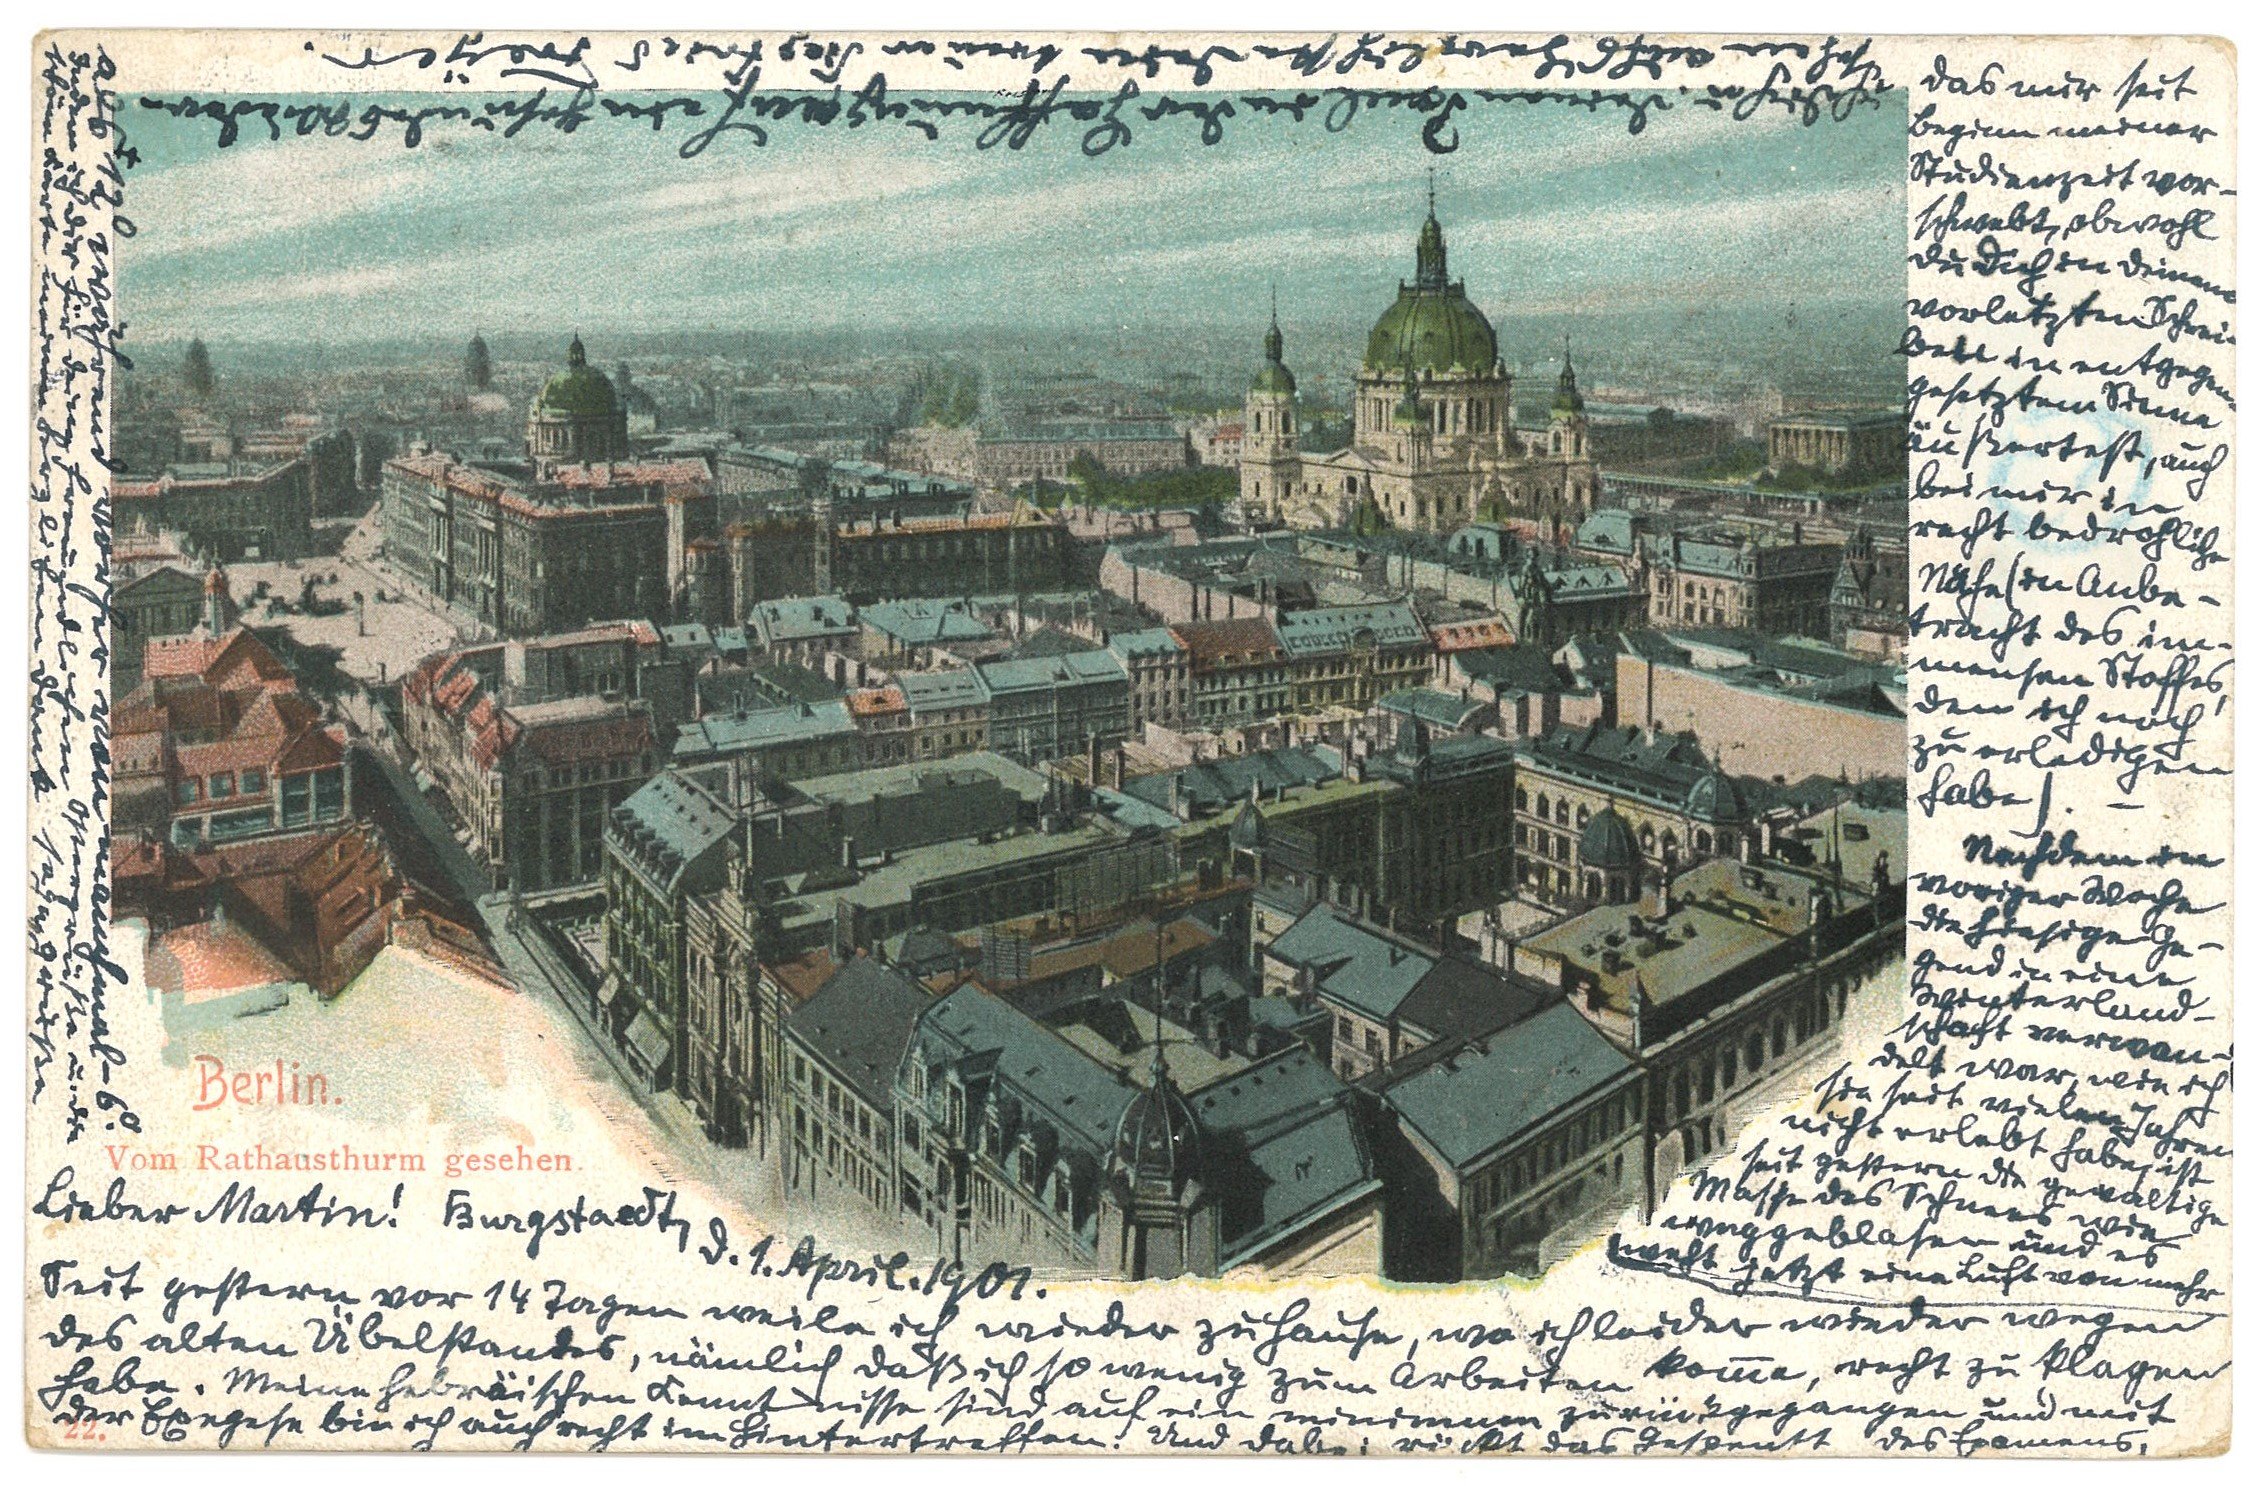 Berlin-Mitte: Blick von Rathausturm nach Nordwesten (Landesgeschichtliche Vereinigung für die Mark Brandenburg e.V. CC BY)